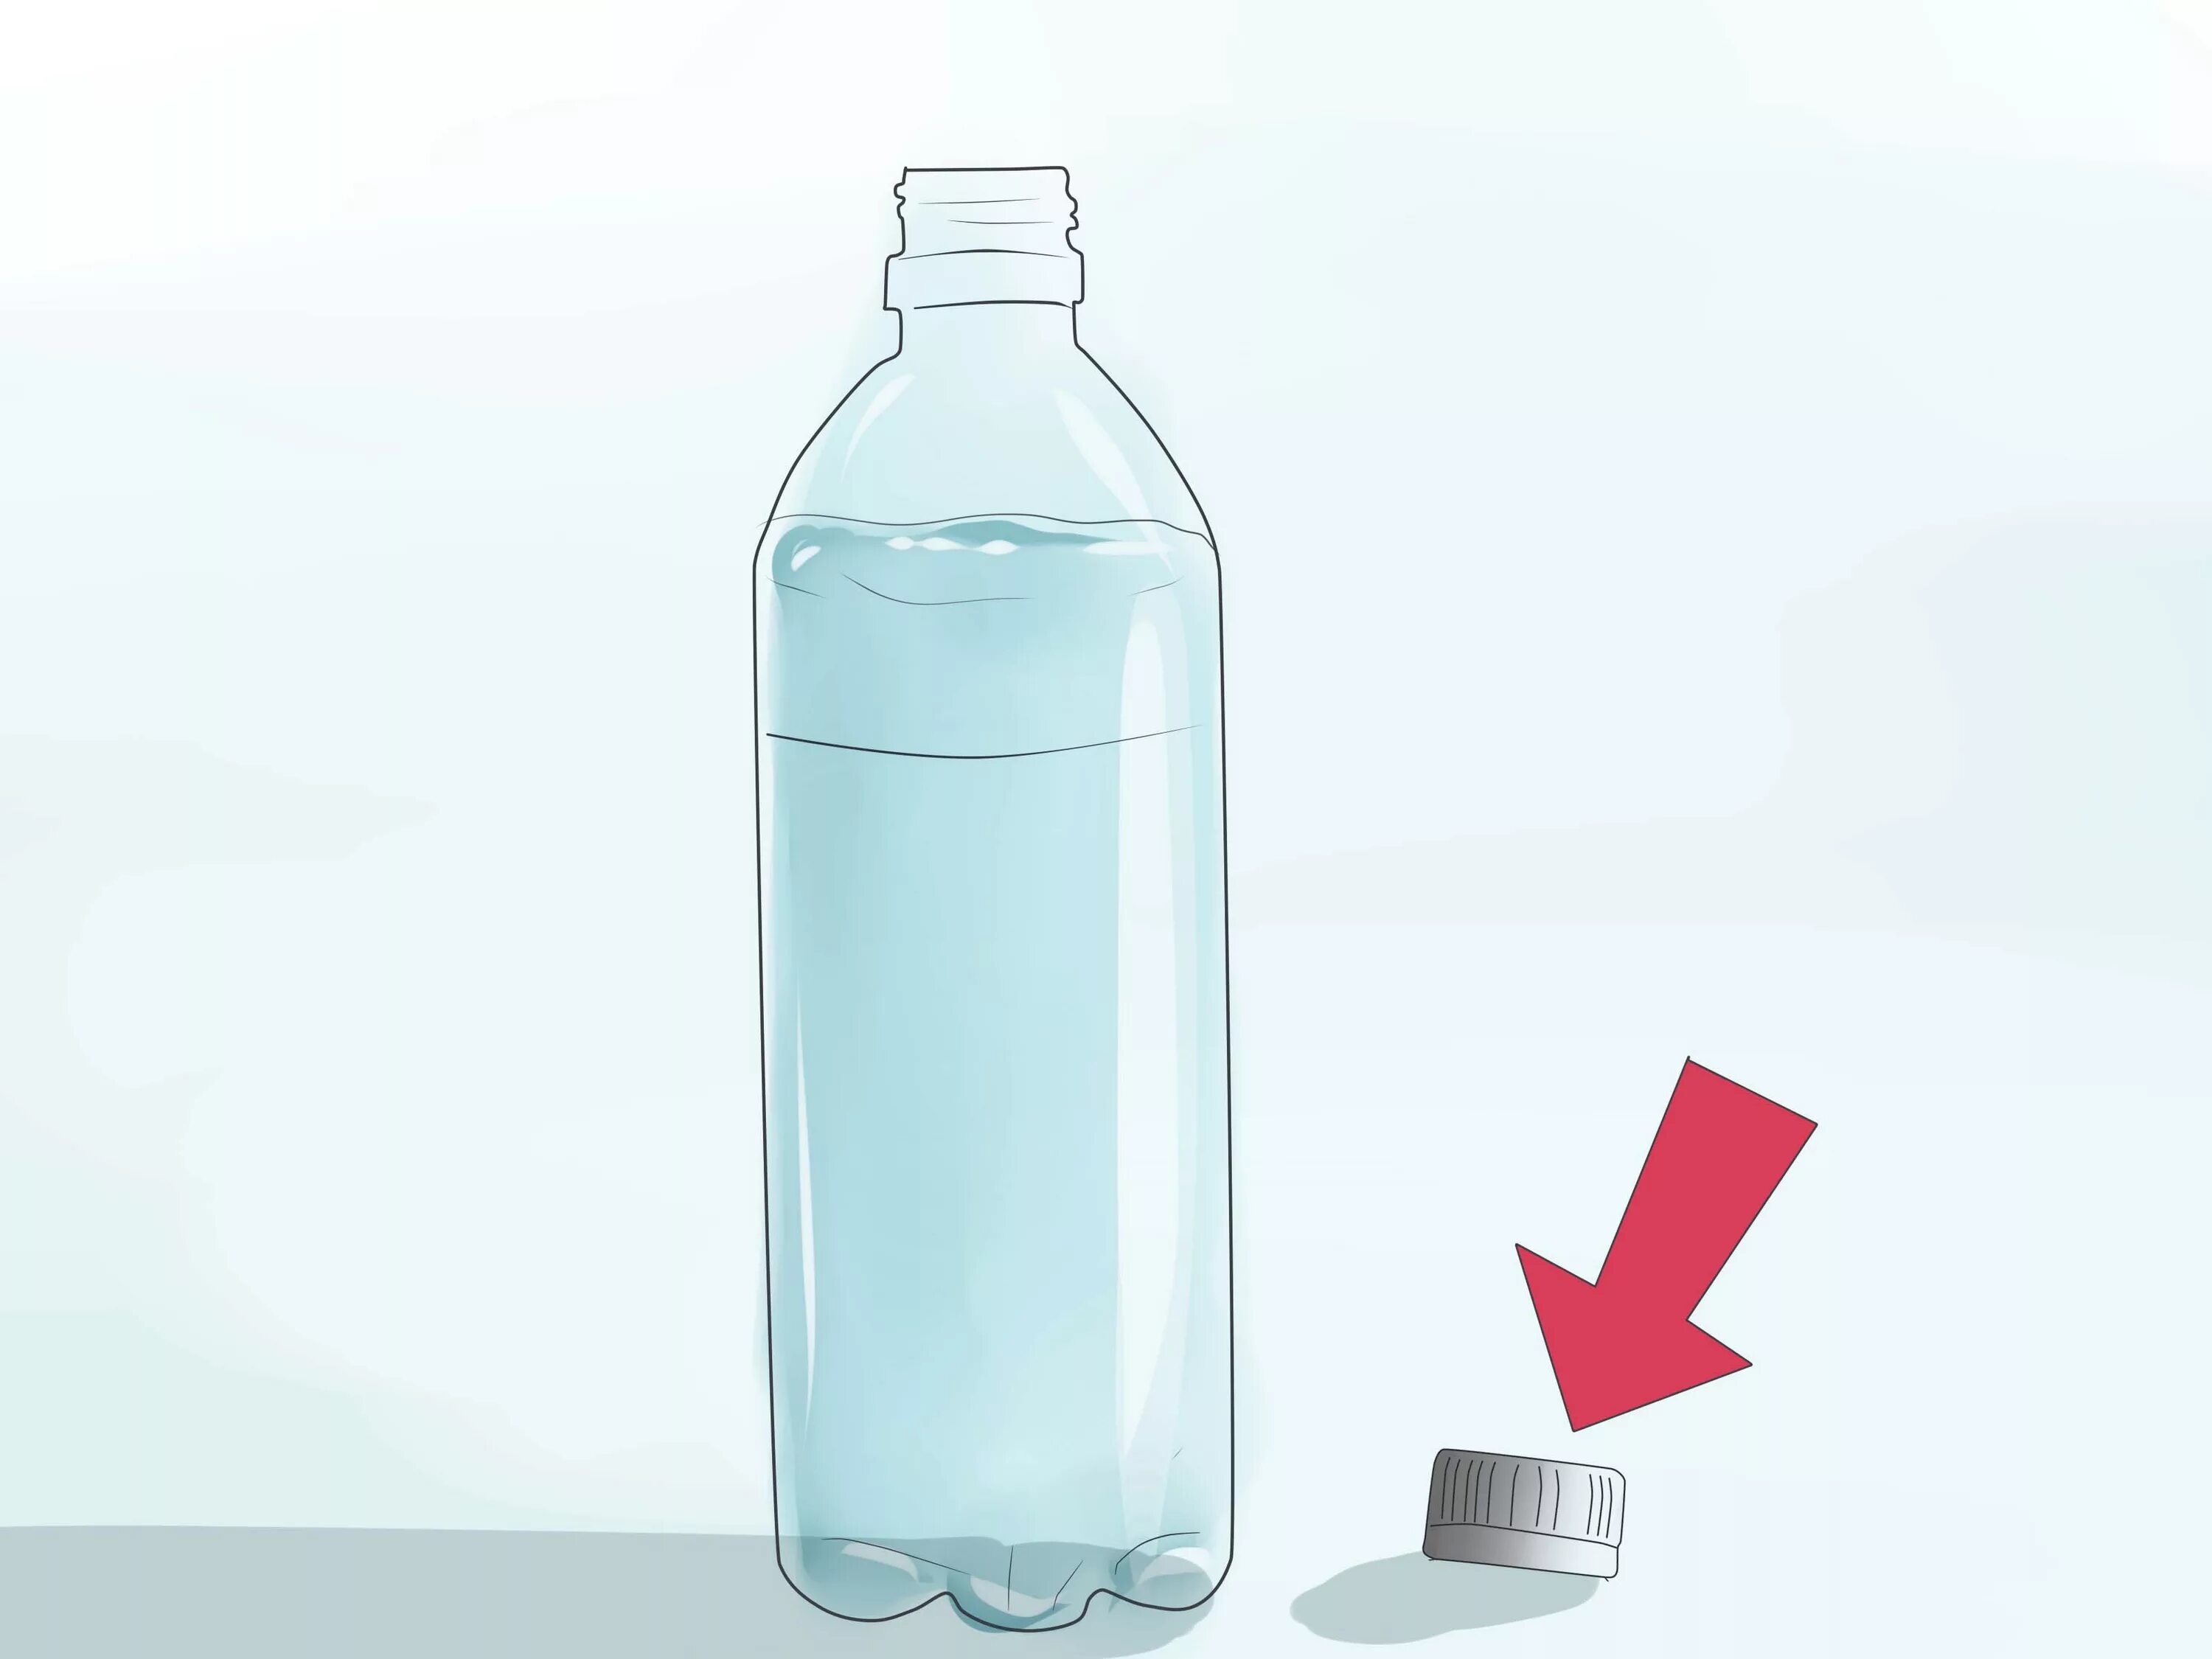 Бутылка для воды. Бутылка воды референс. Открытая бутылка воды. Стеклянная бутылка для воды. Почему бутылка наполнена водой